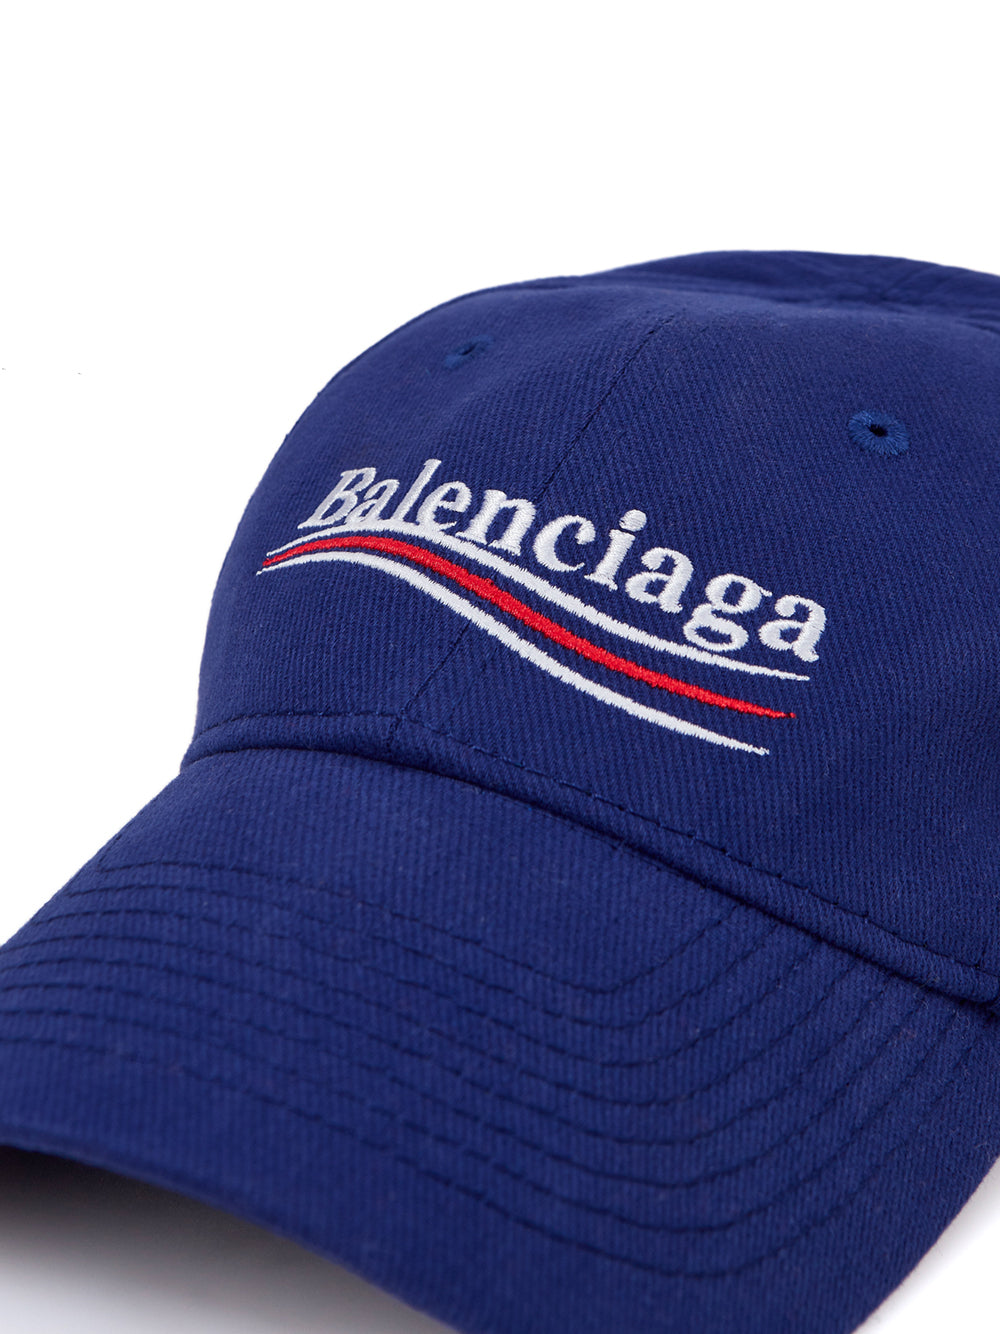 Balenciaga Blue Baseball 'Political' Cap